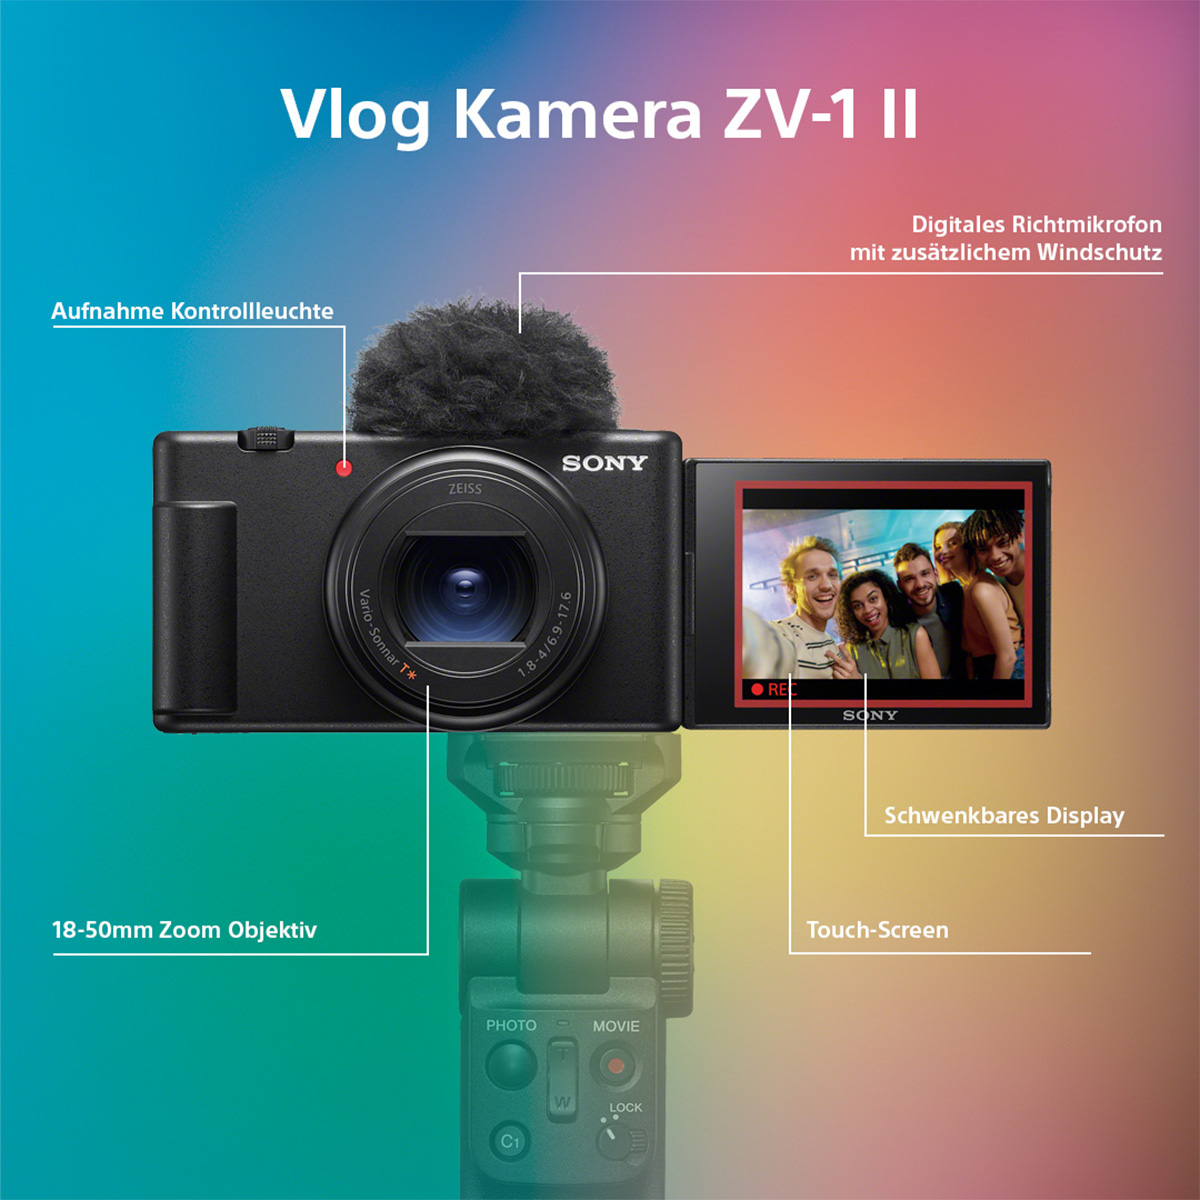 Sony ZV-1 II Vlog Kamera Infographic